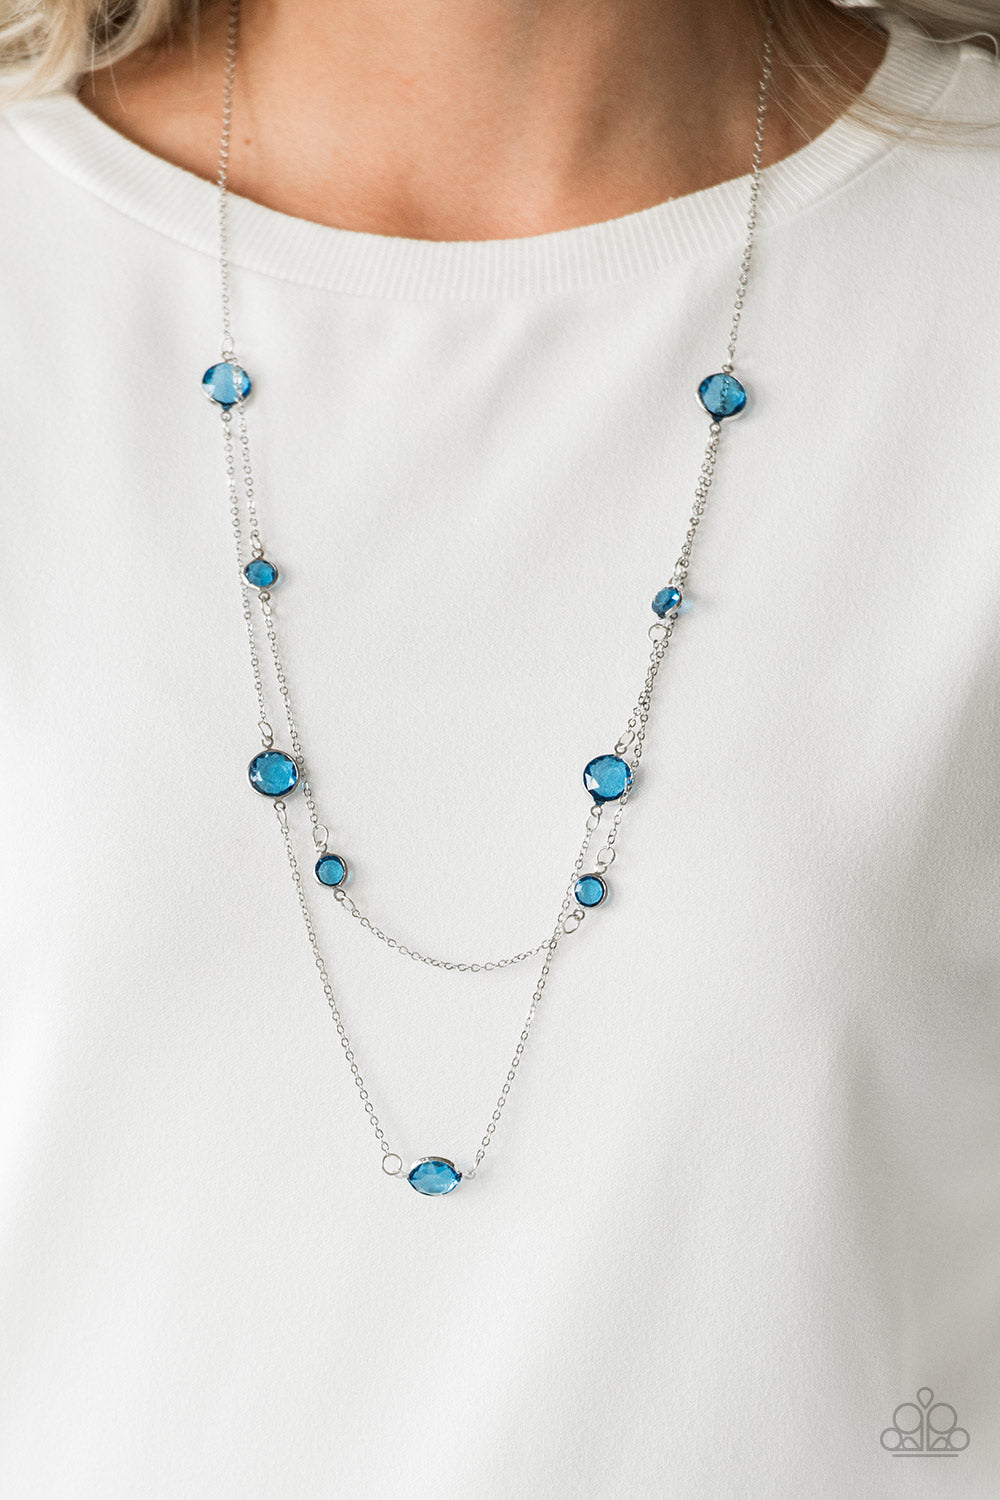 Raise Your Glass - Blue Necklace - Paparazzi Accessories